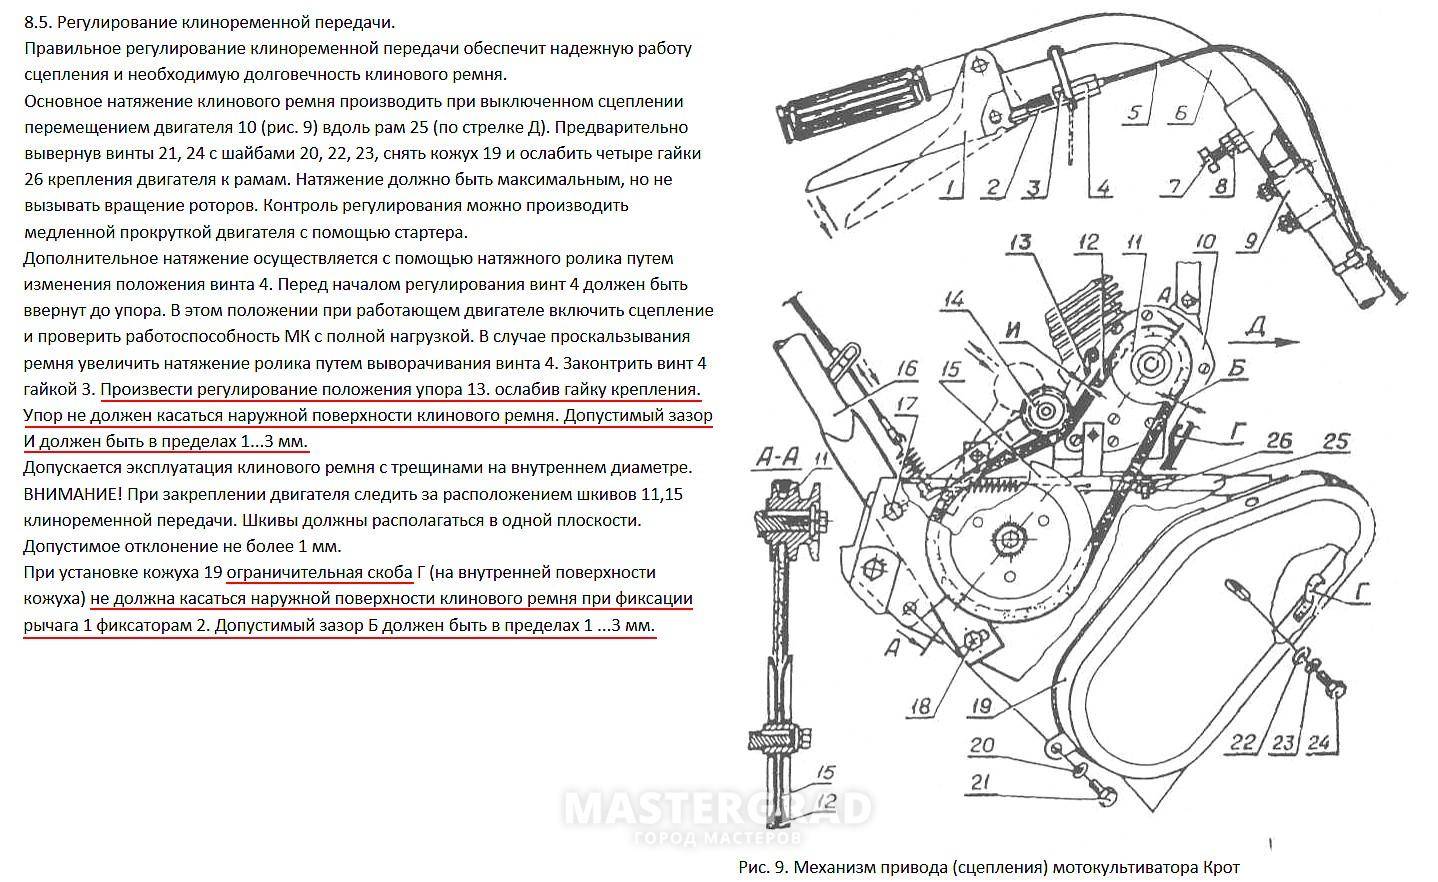 О мотокультиваторе «крот»: инструкция по эксплуатации и ремонту, характеристики